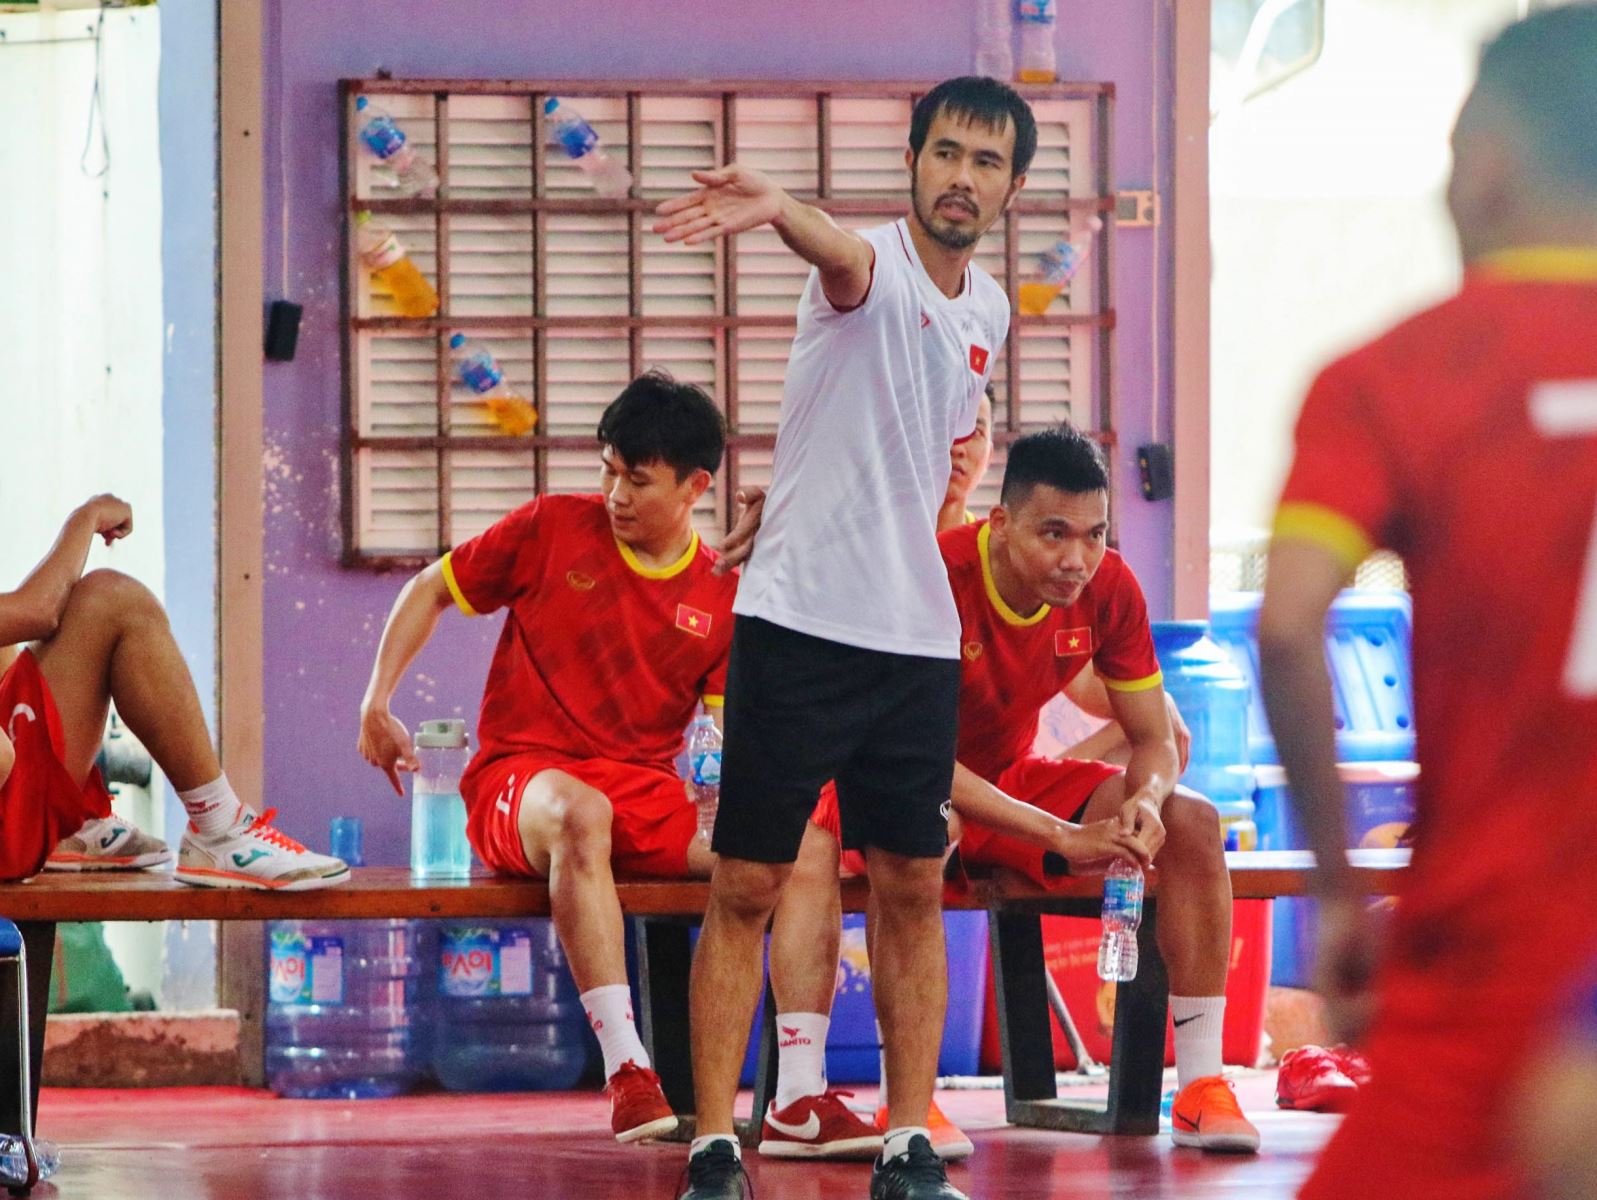 Tuyển futsal Việt Nam lên đường sang Thái Lan tập huấn